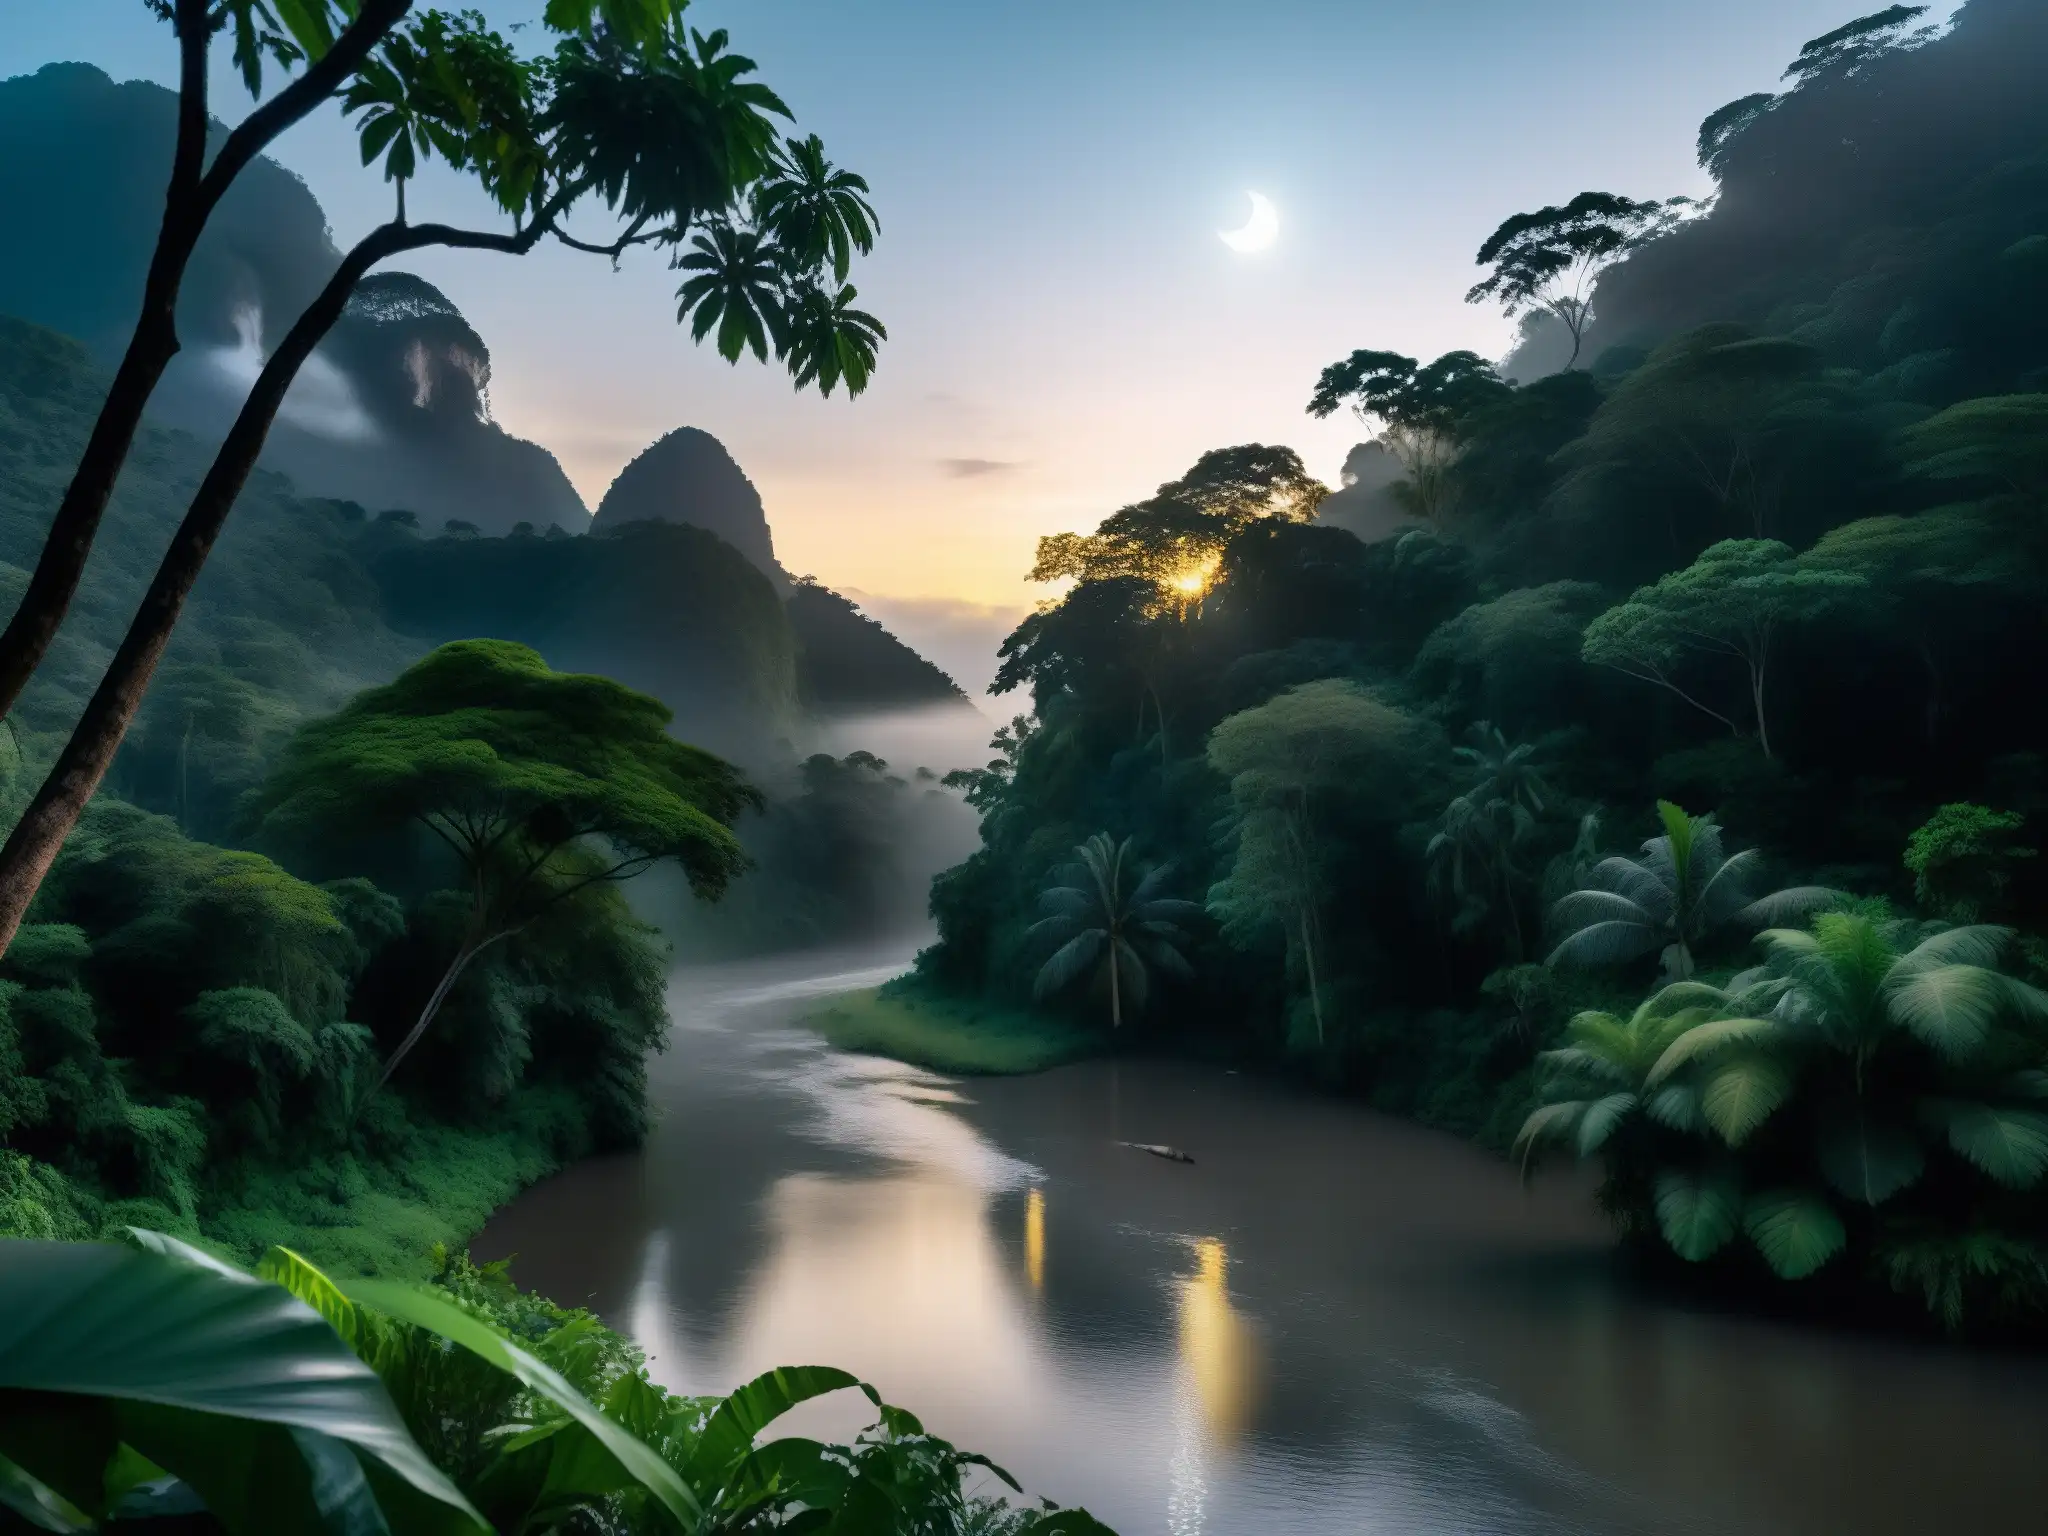 Una misteriosa escena de la selva sudamericana iluminada por la luna, con una figura velada junto al río